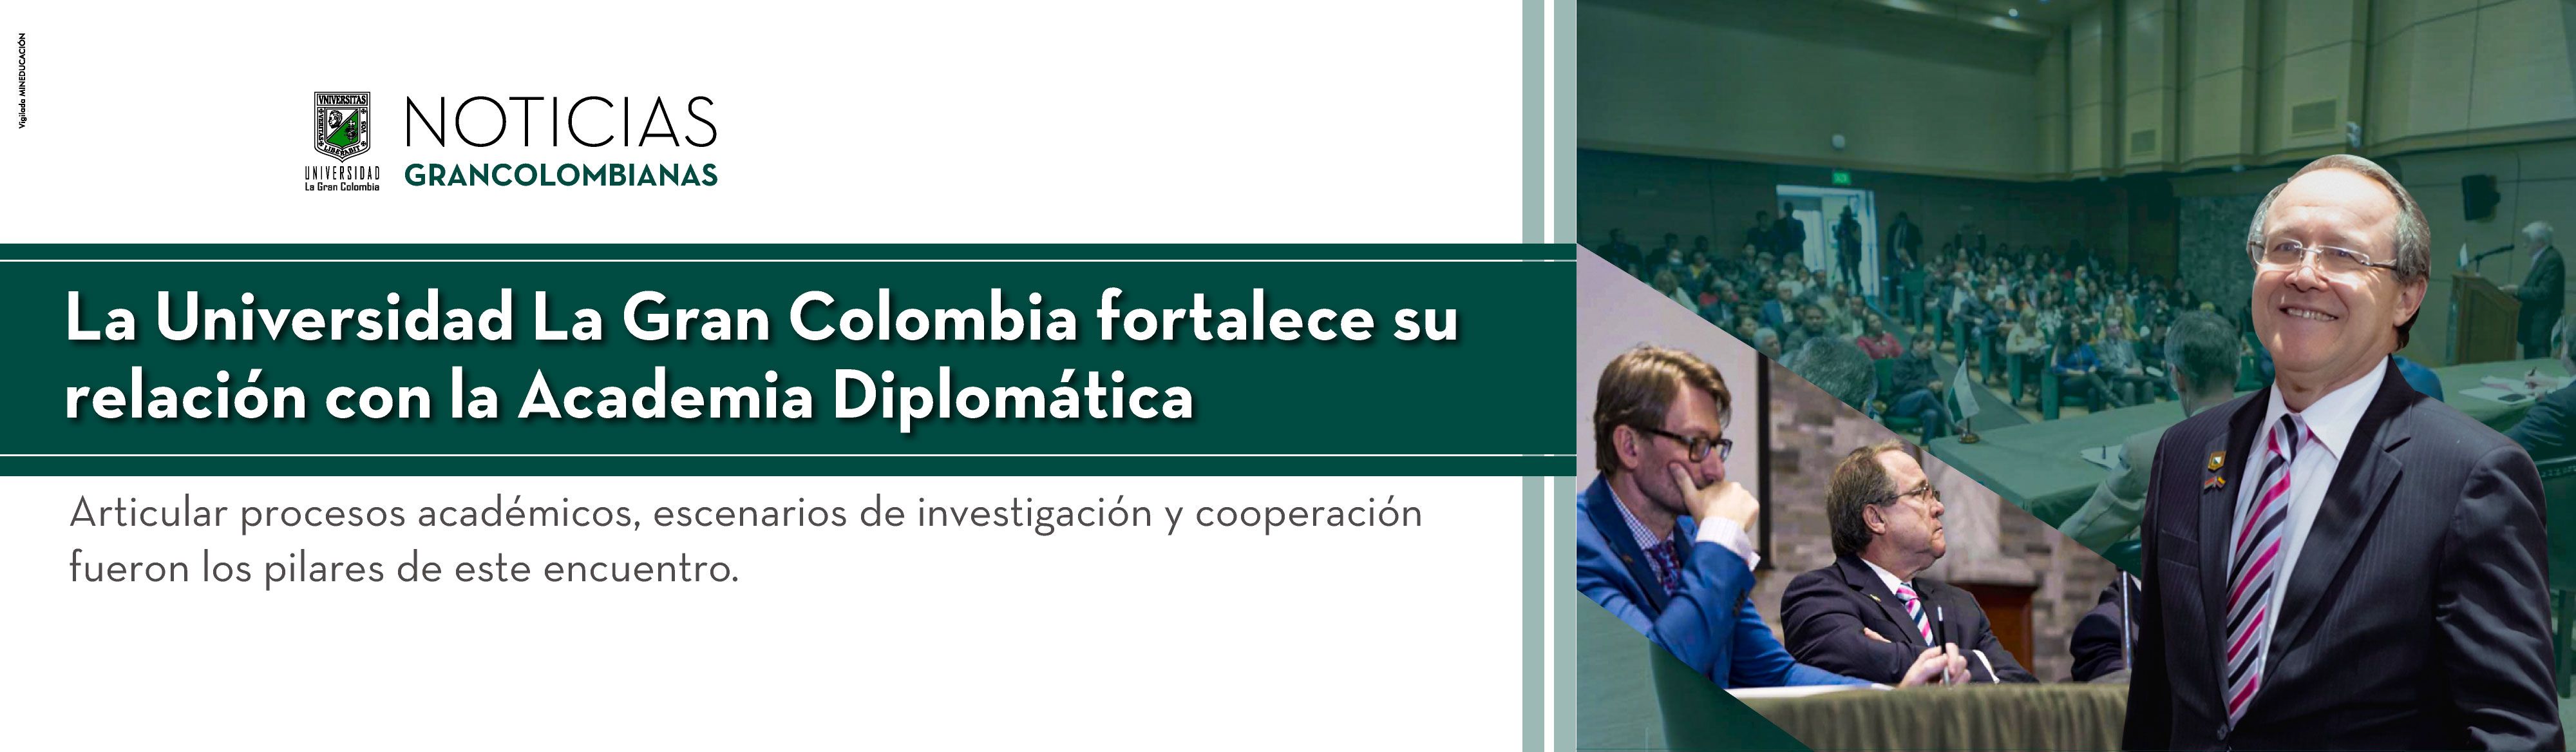 La Universidad La Gran Colombia fortalece su relación con la Academia Diplomática